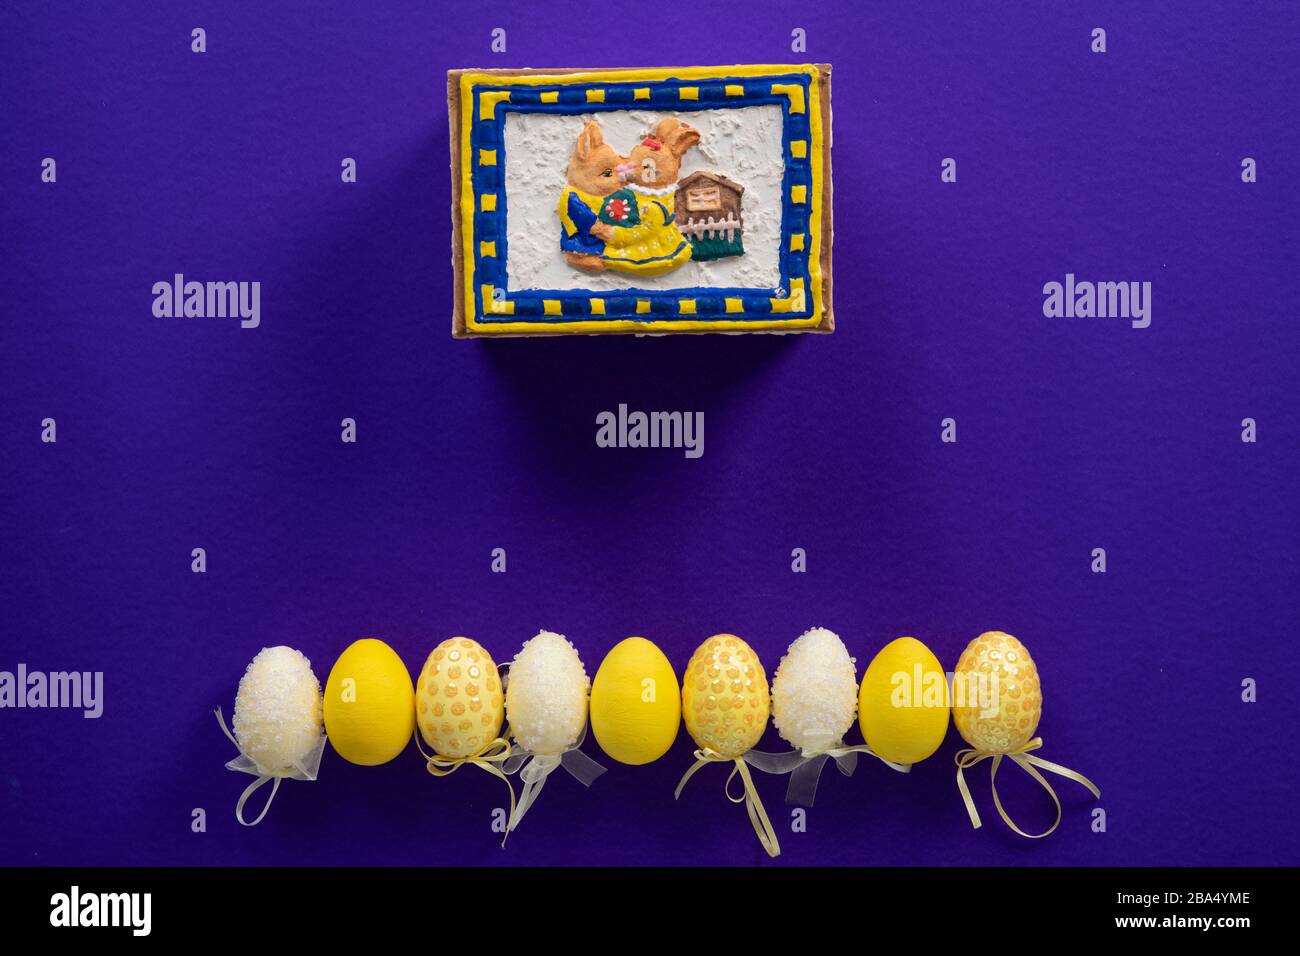 Osterhase und neun gelb-weiße, gefälschte Ostereier aus Kunststoff auf dunkelviolettem Grund Stockfoto